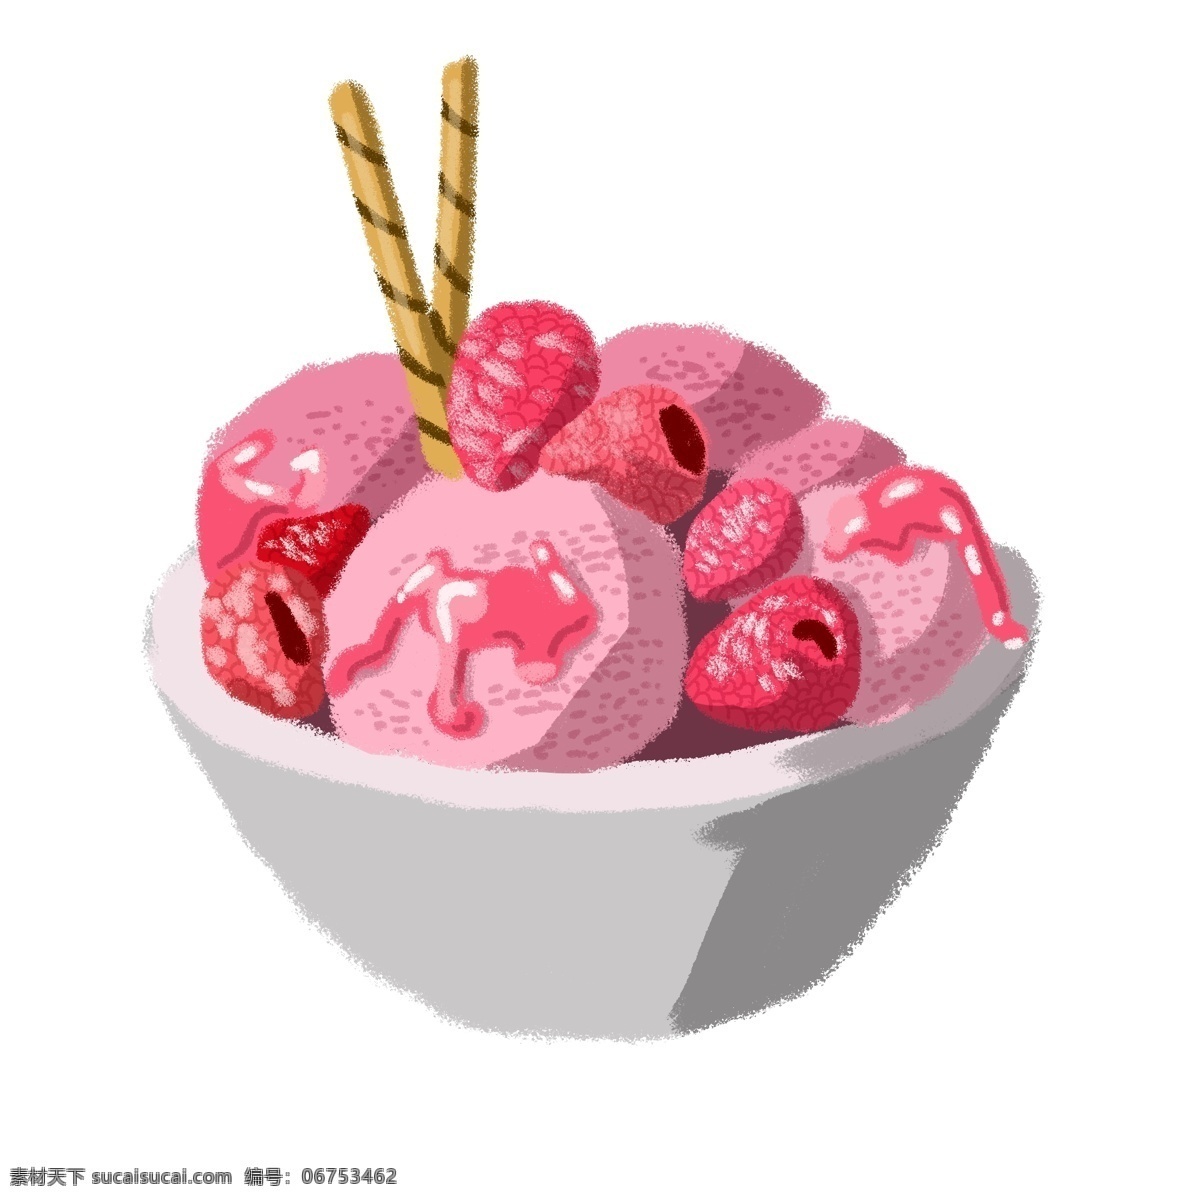 桑葚 冰 激 淋 碗 冰激淋球 粉红色 草莓酱 华夫饼干棒 大碗 甜食 甜品 甜点 甜的 美味 可口